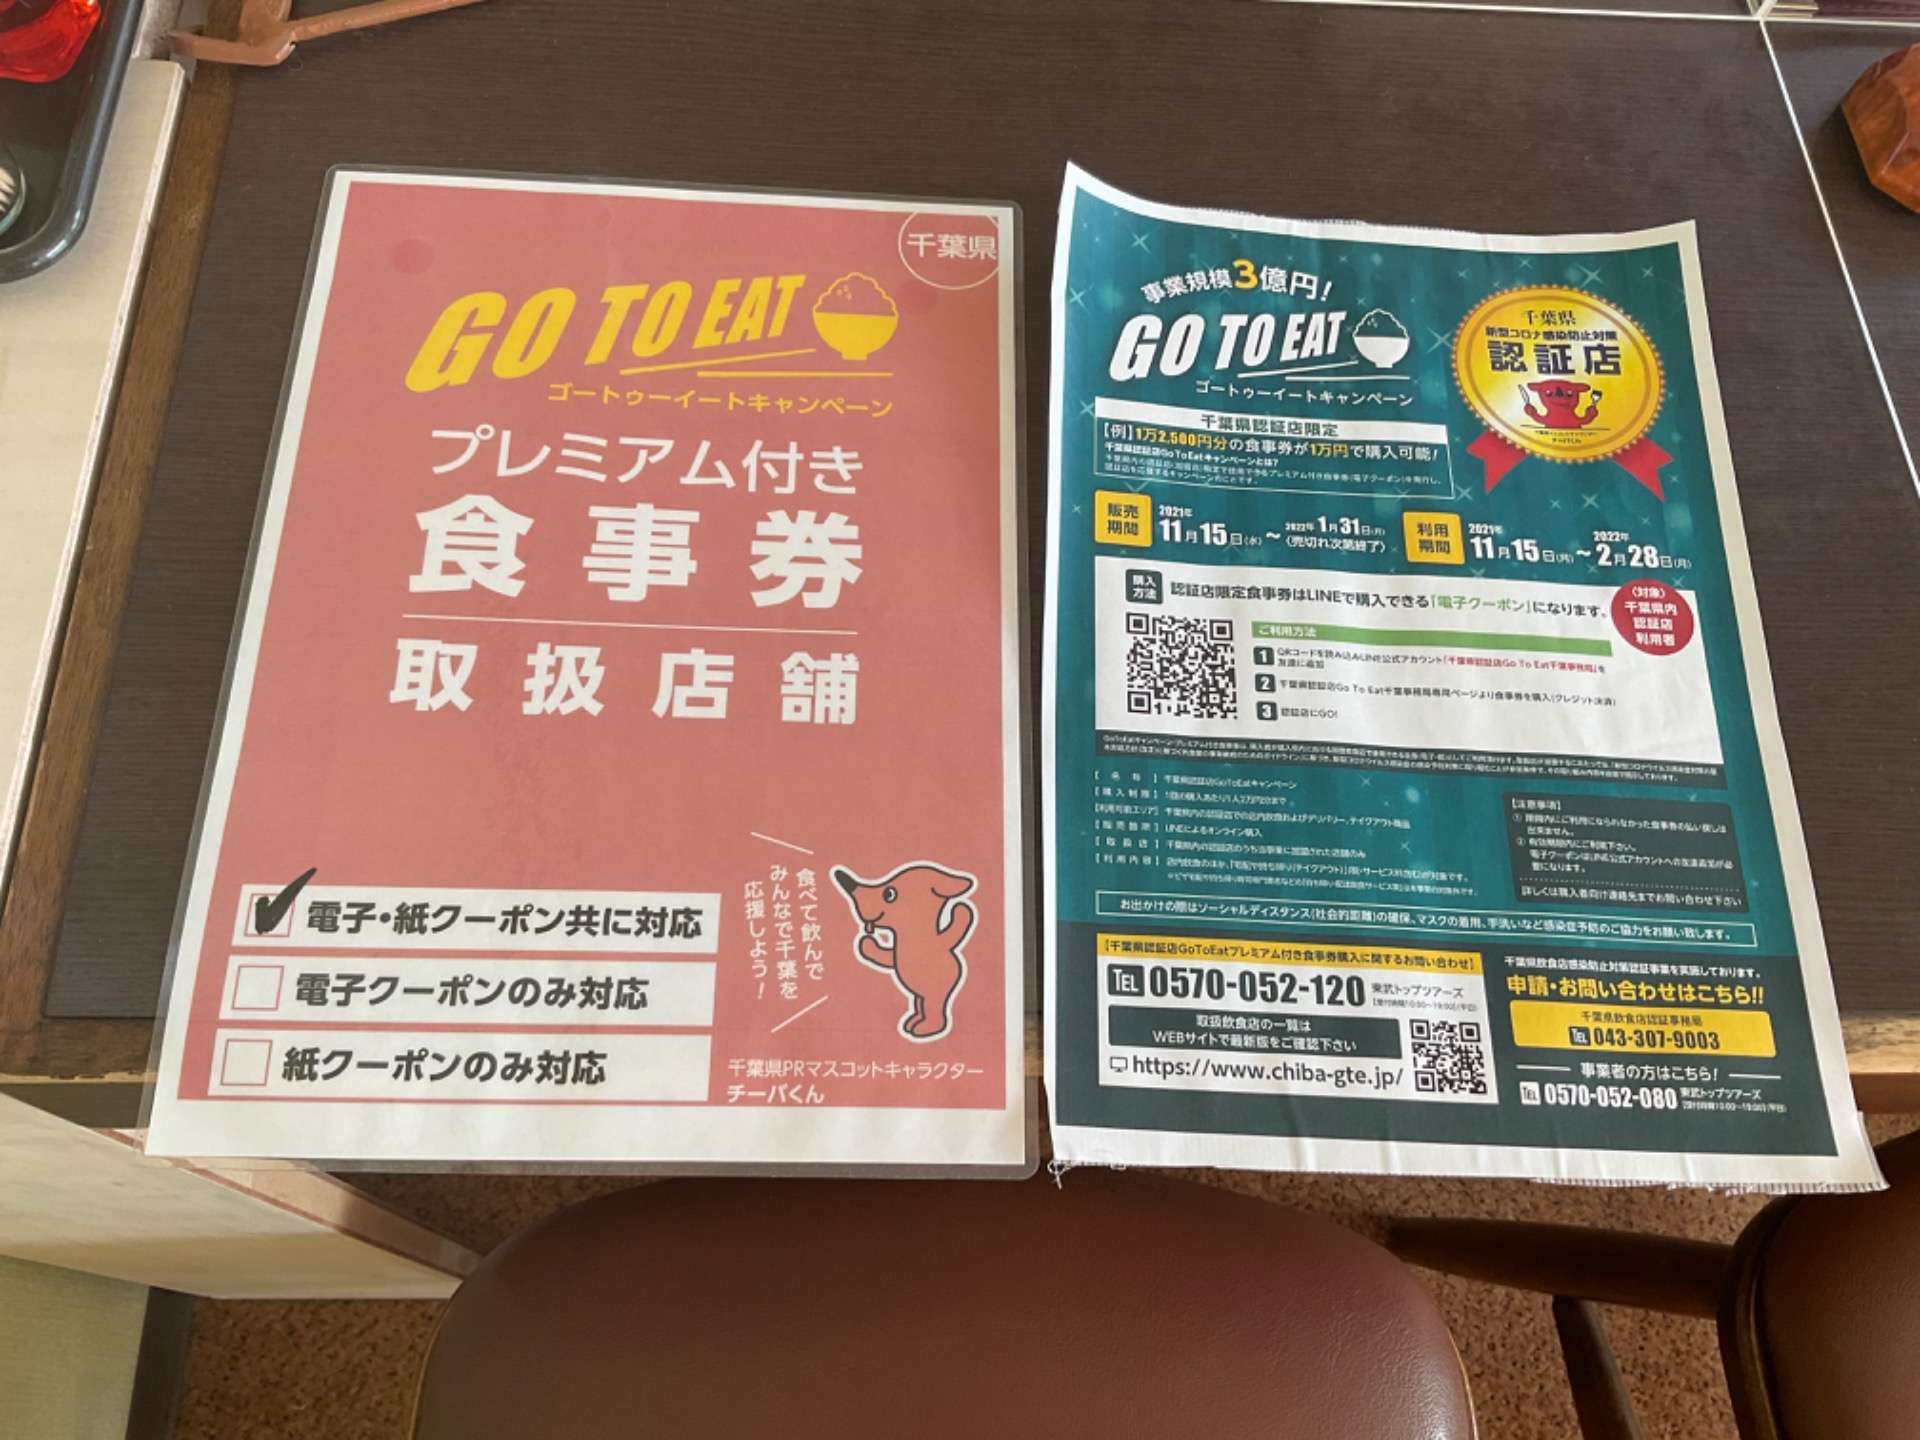 千葉県 Go To Eat キャンペーン食事券の販売が再開！